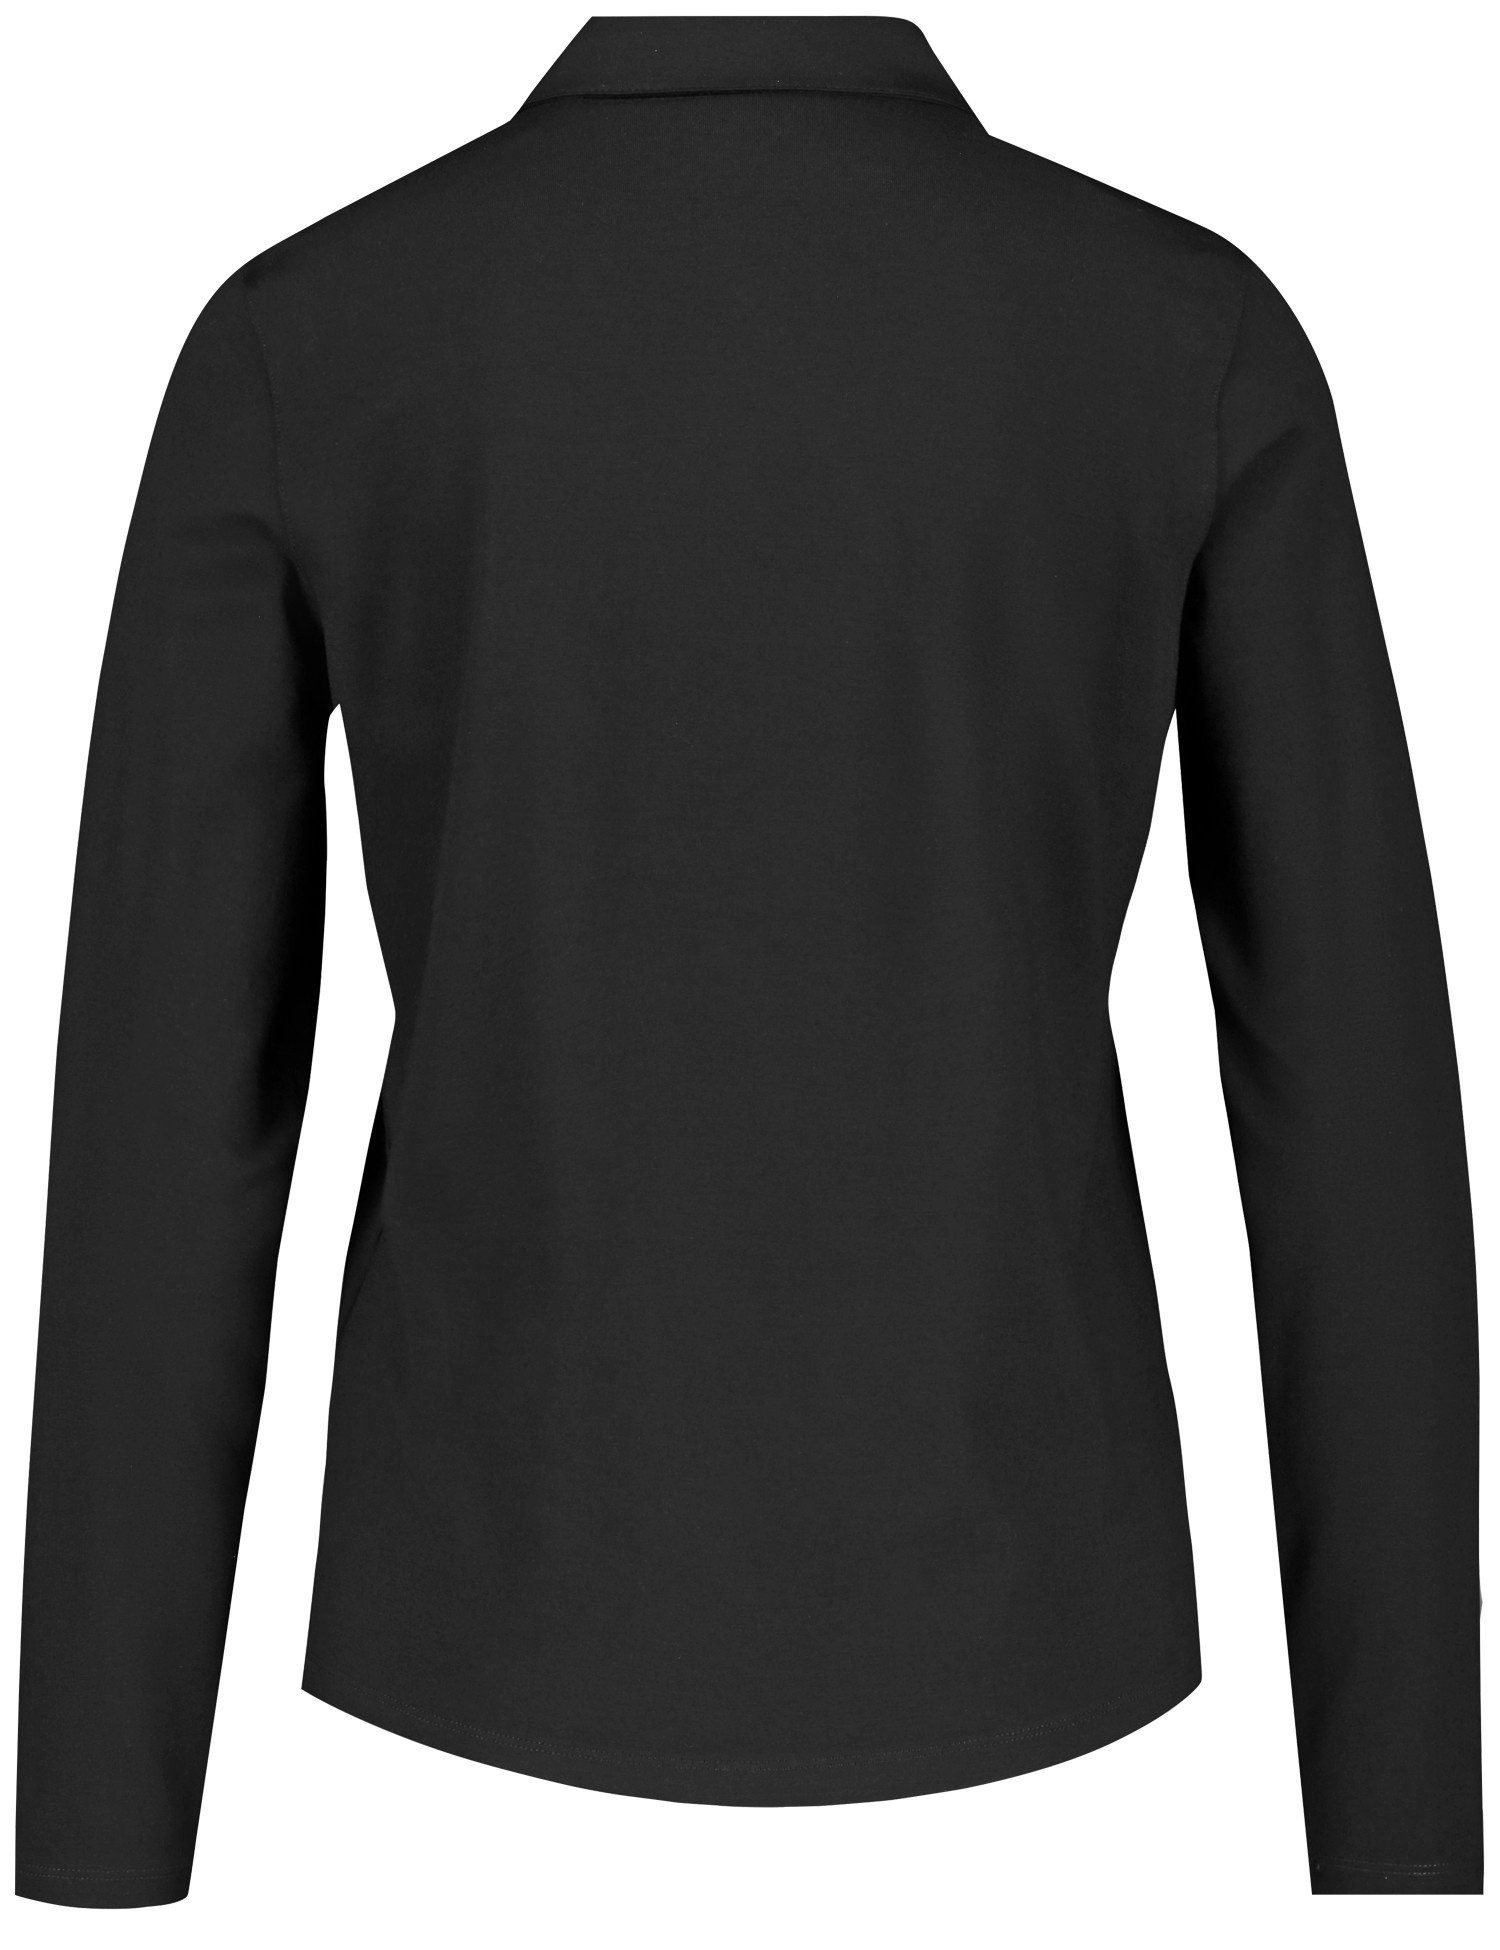 Poloshirt schwarz GERRY Langarm WEBER Poloshirt Durchgehender mit Knopfleiste